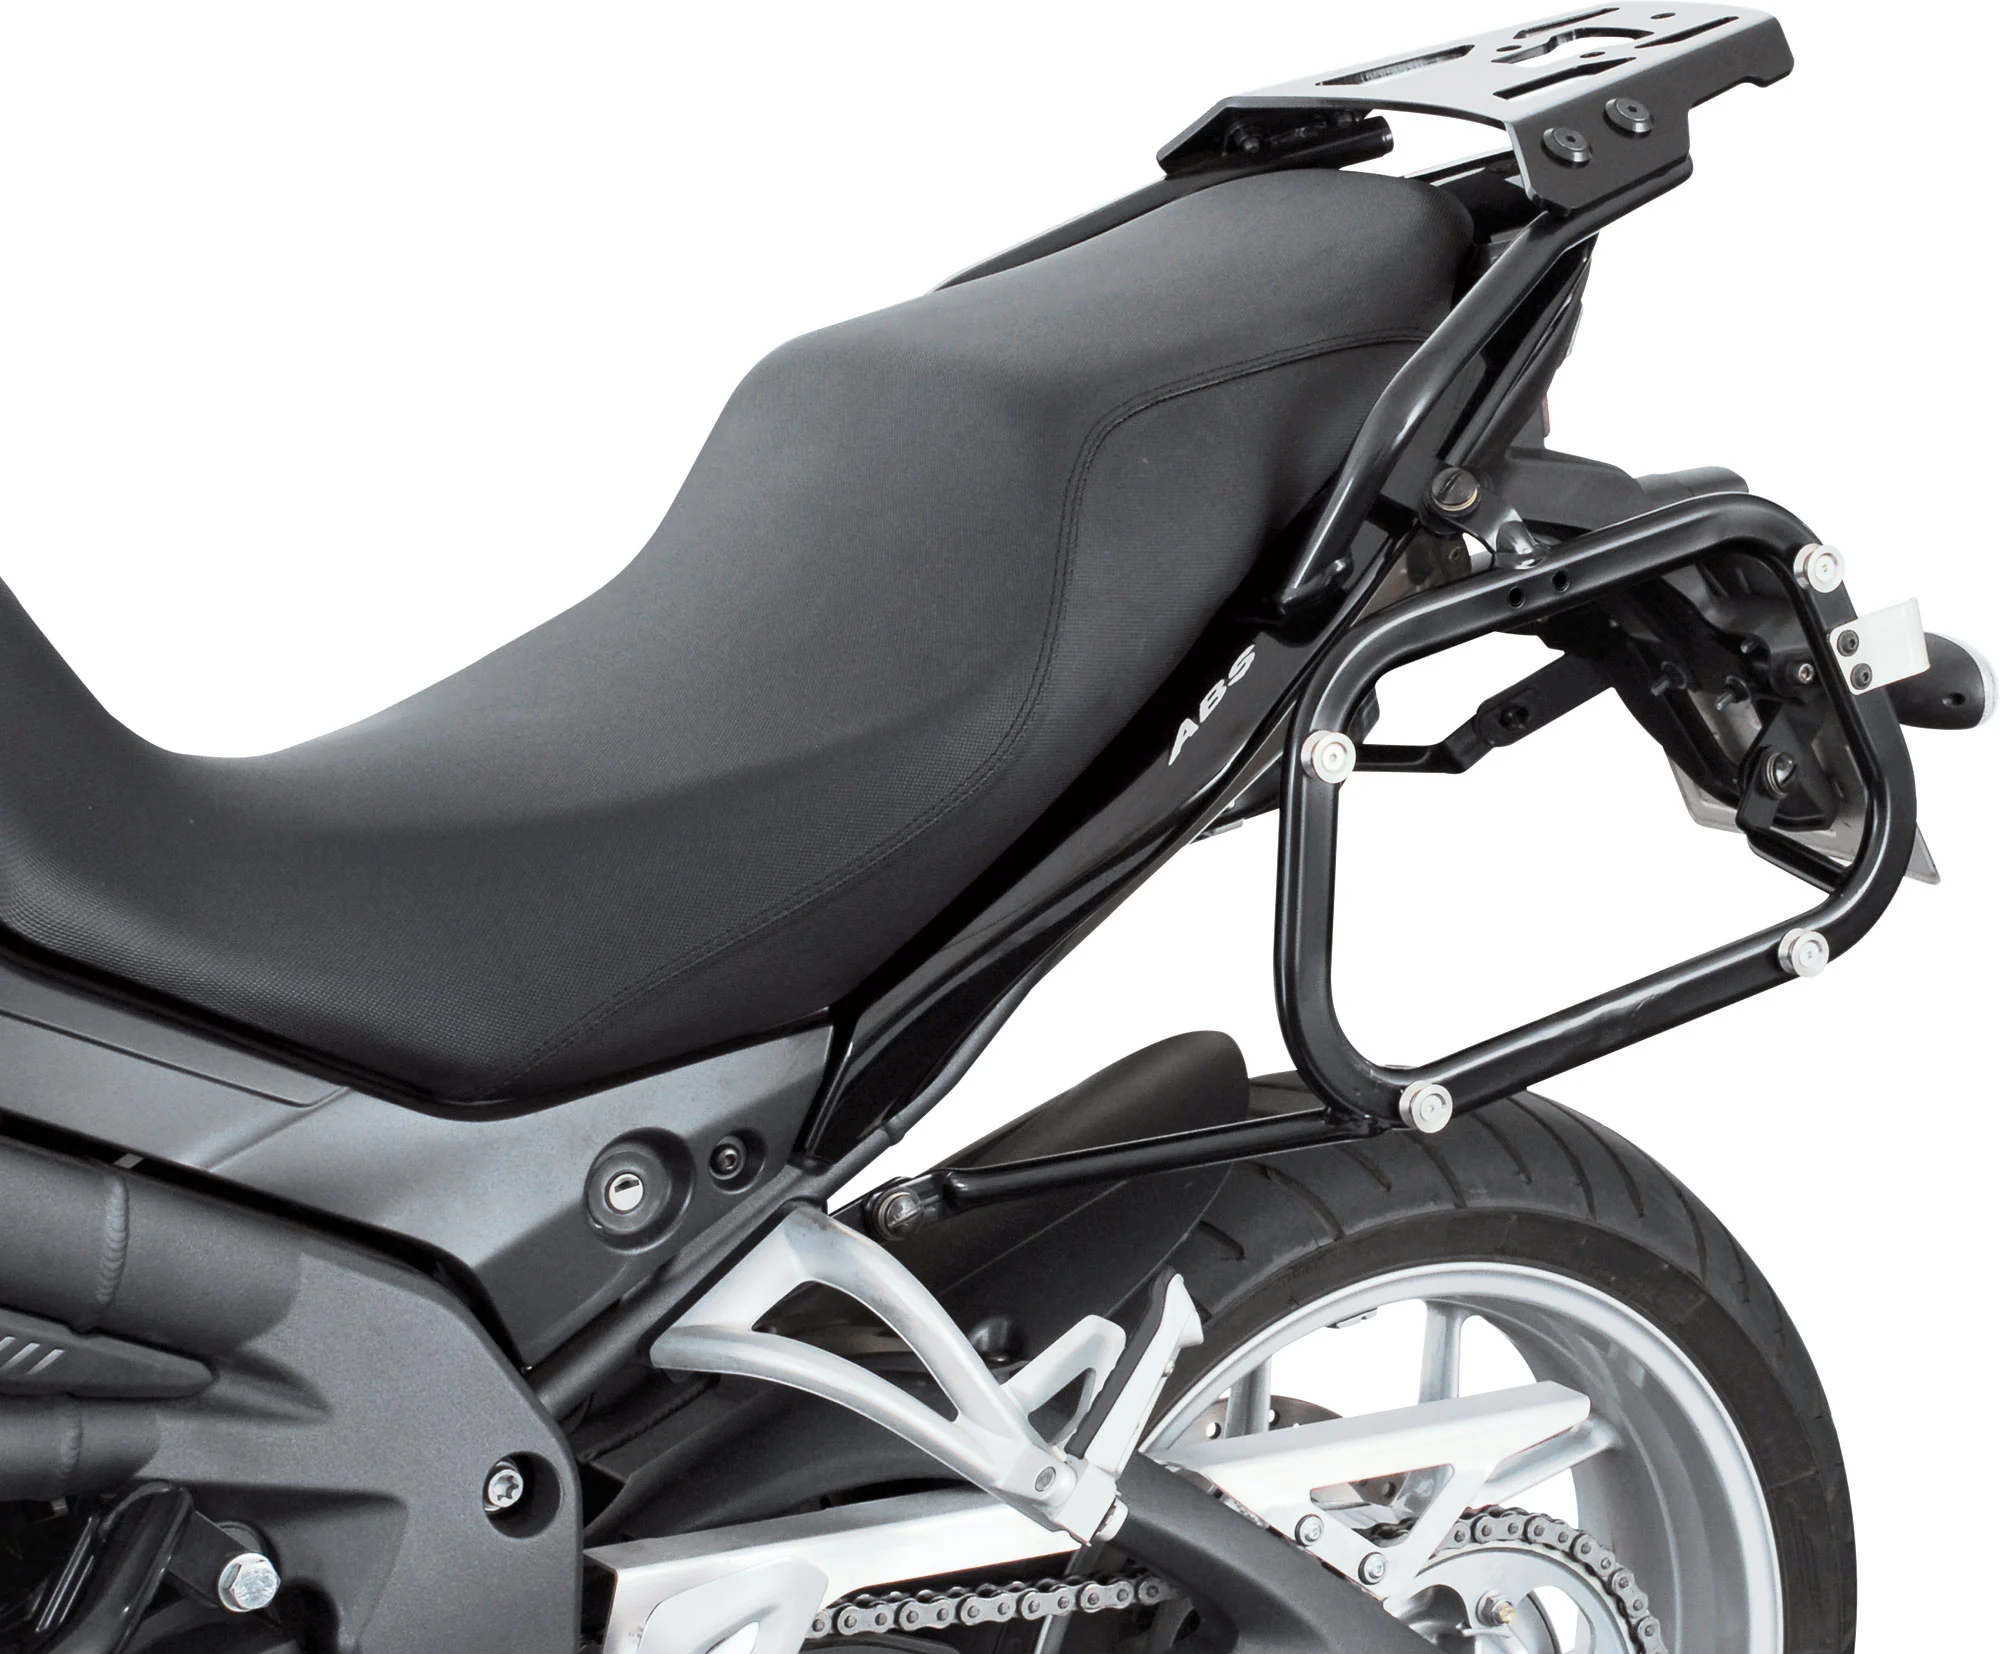 Motorrad Kennzeichenhalter Nummernschild Halterung Schwarz 210 x 143mm, Verkleidungen Einzeln, Verkleidungsteile, Verschleissteile